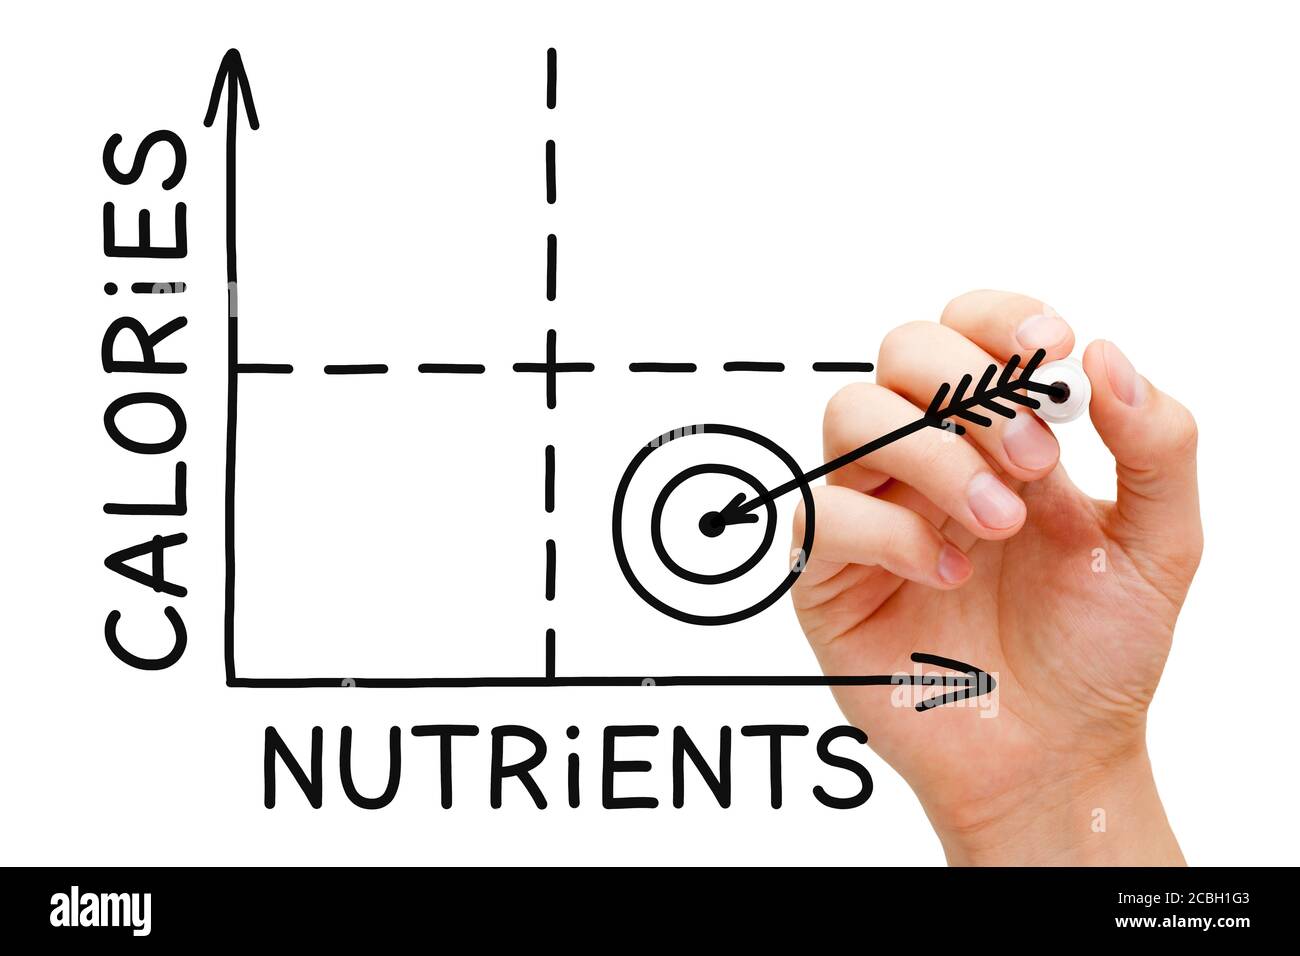 Hand Zeichnung kalorienarm reich an Nährstoffen Food Matrix Diät-Diagramm Konzept mit Marker auf transparentem Wipe Board. Stockfoto